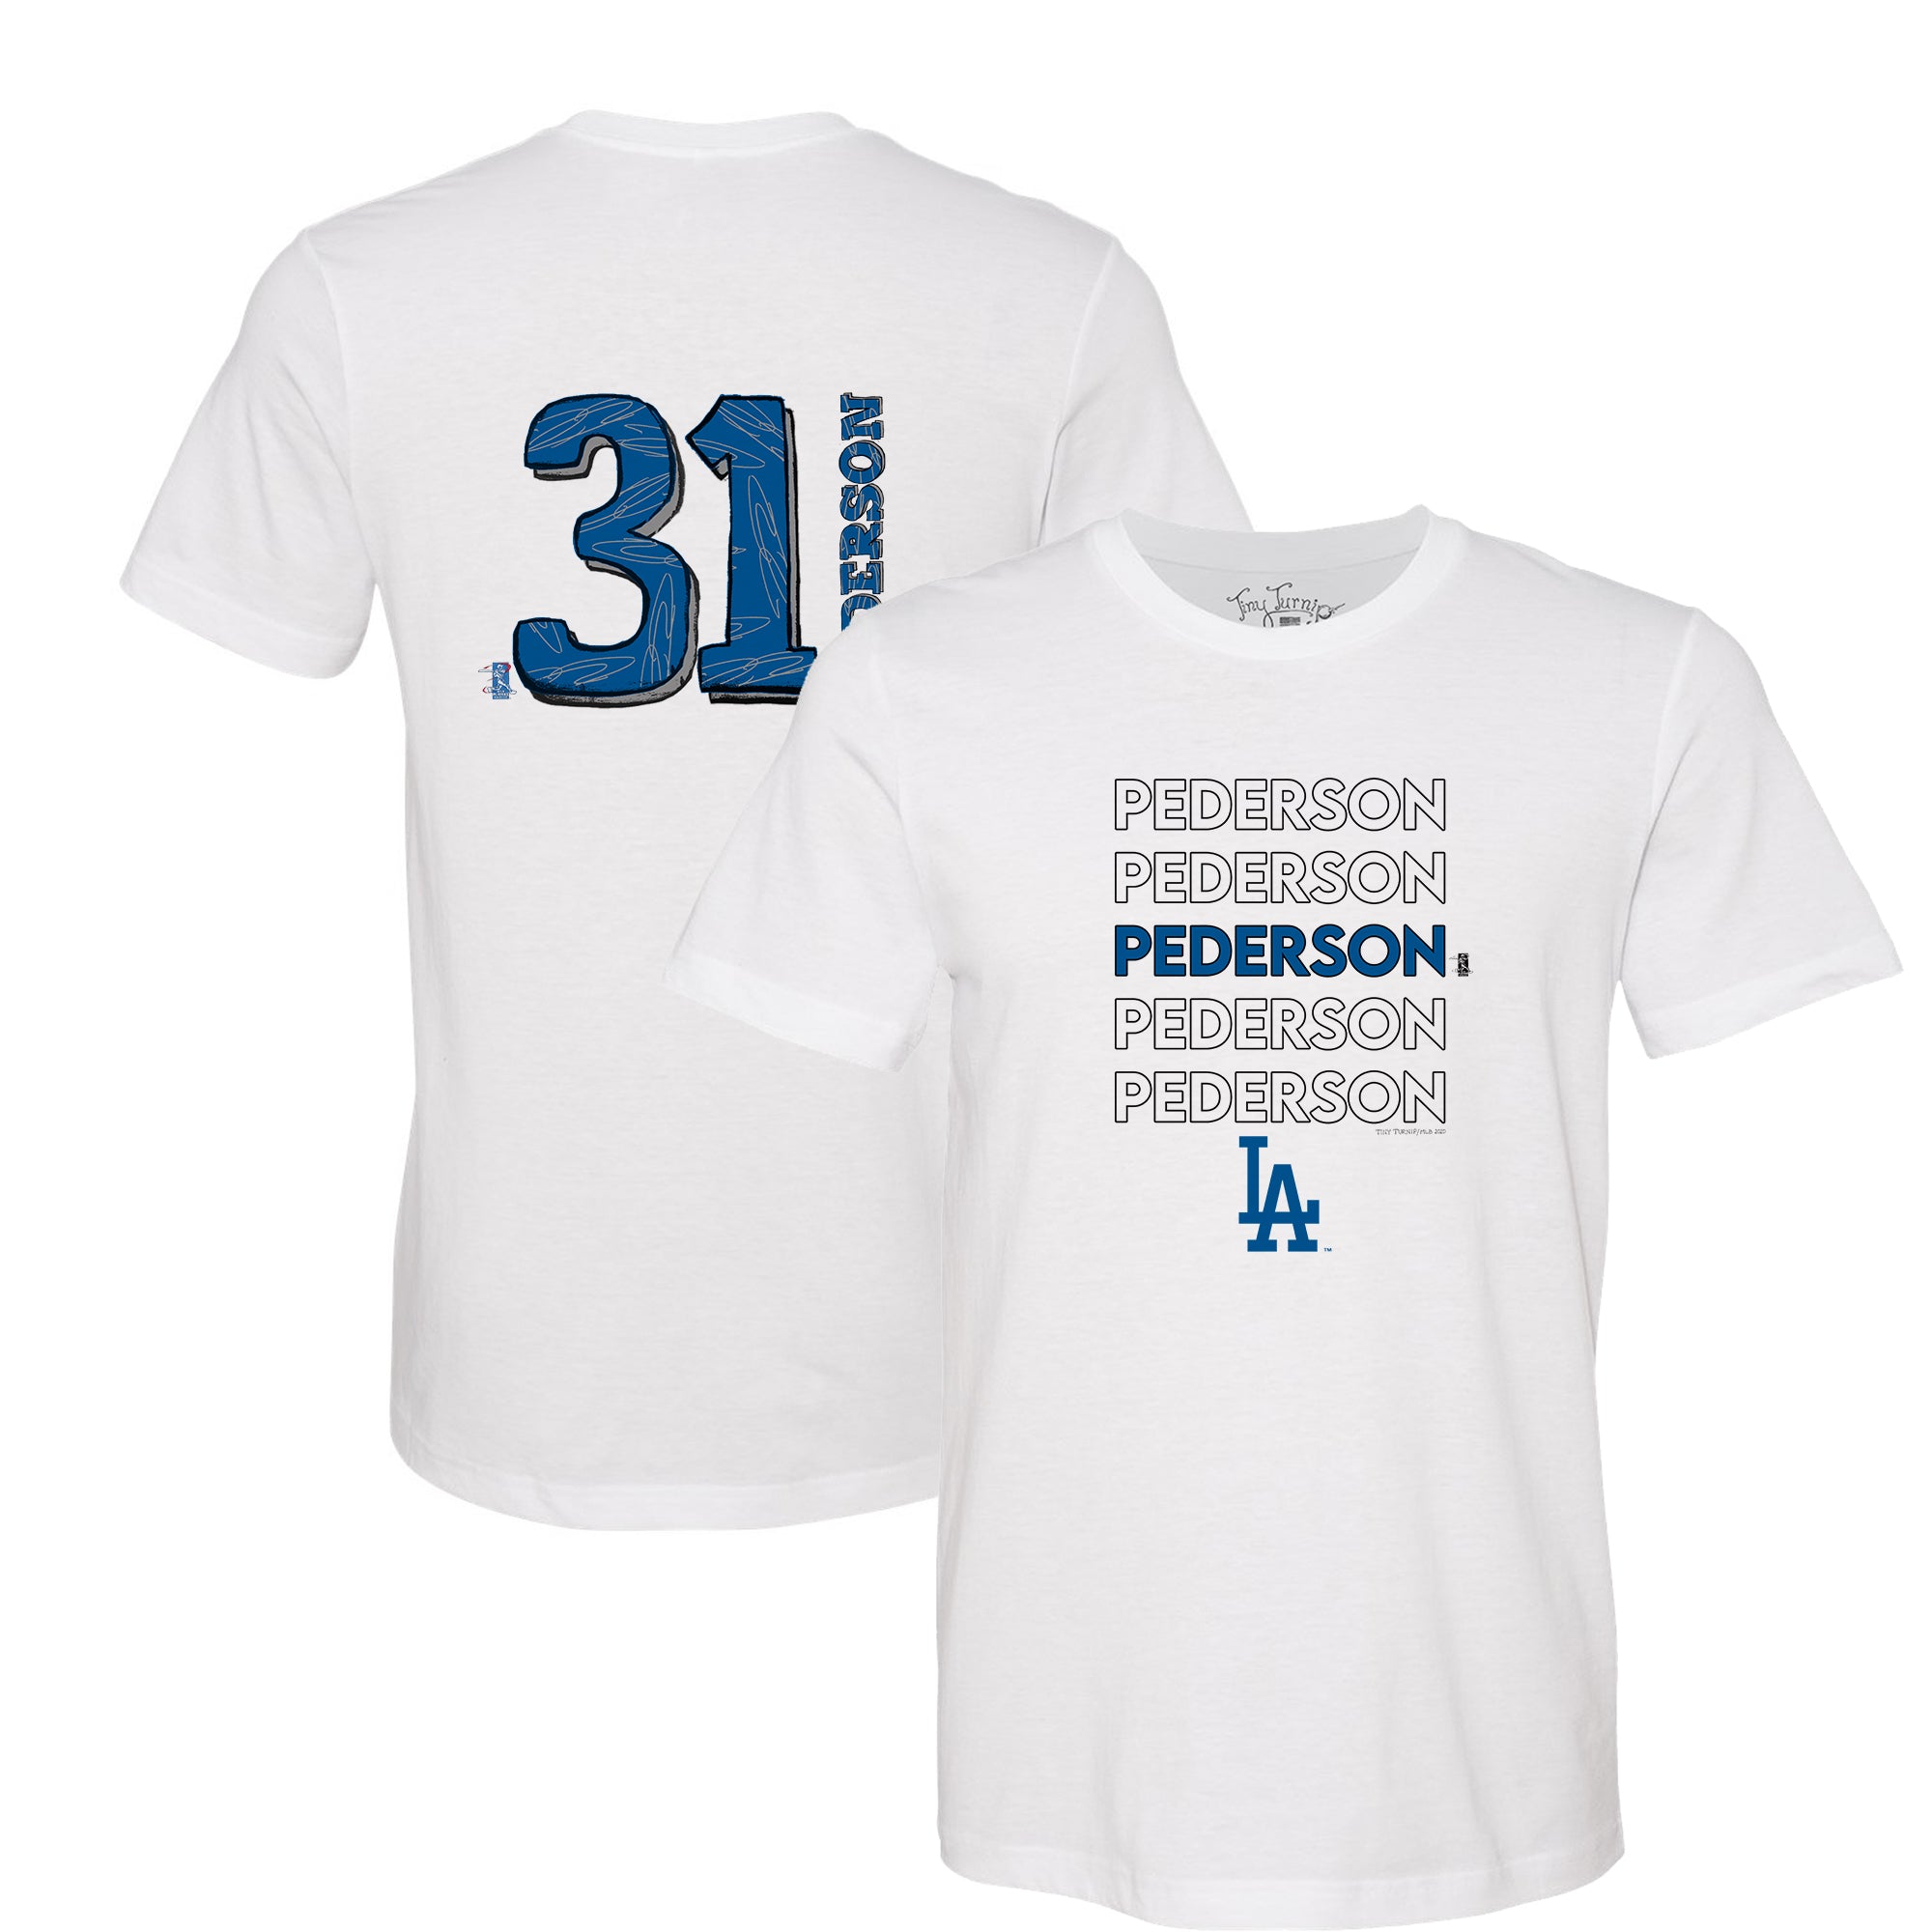 joc pederson shirt